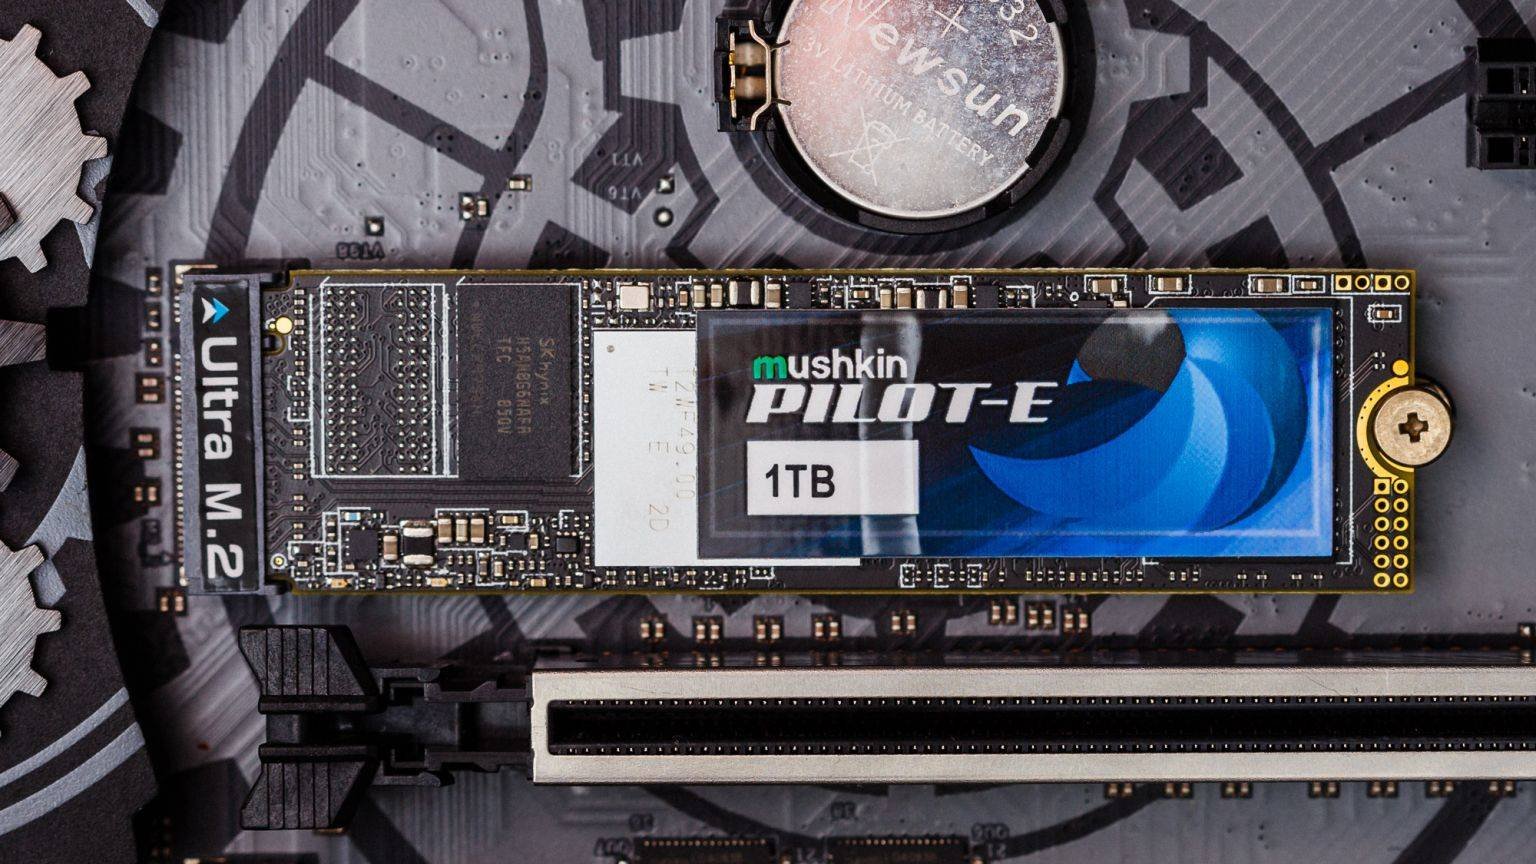 Immagine di PILOT-E: i nuovi SSD M2 di Mushkin con velocità fino a 3.500 MB/S